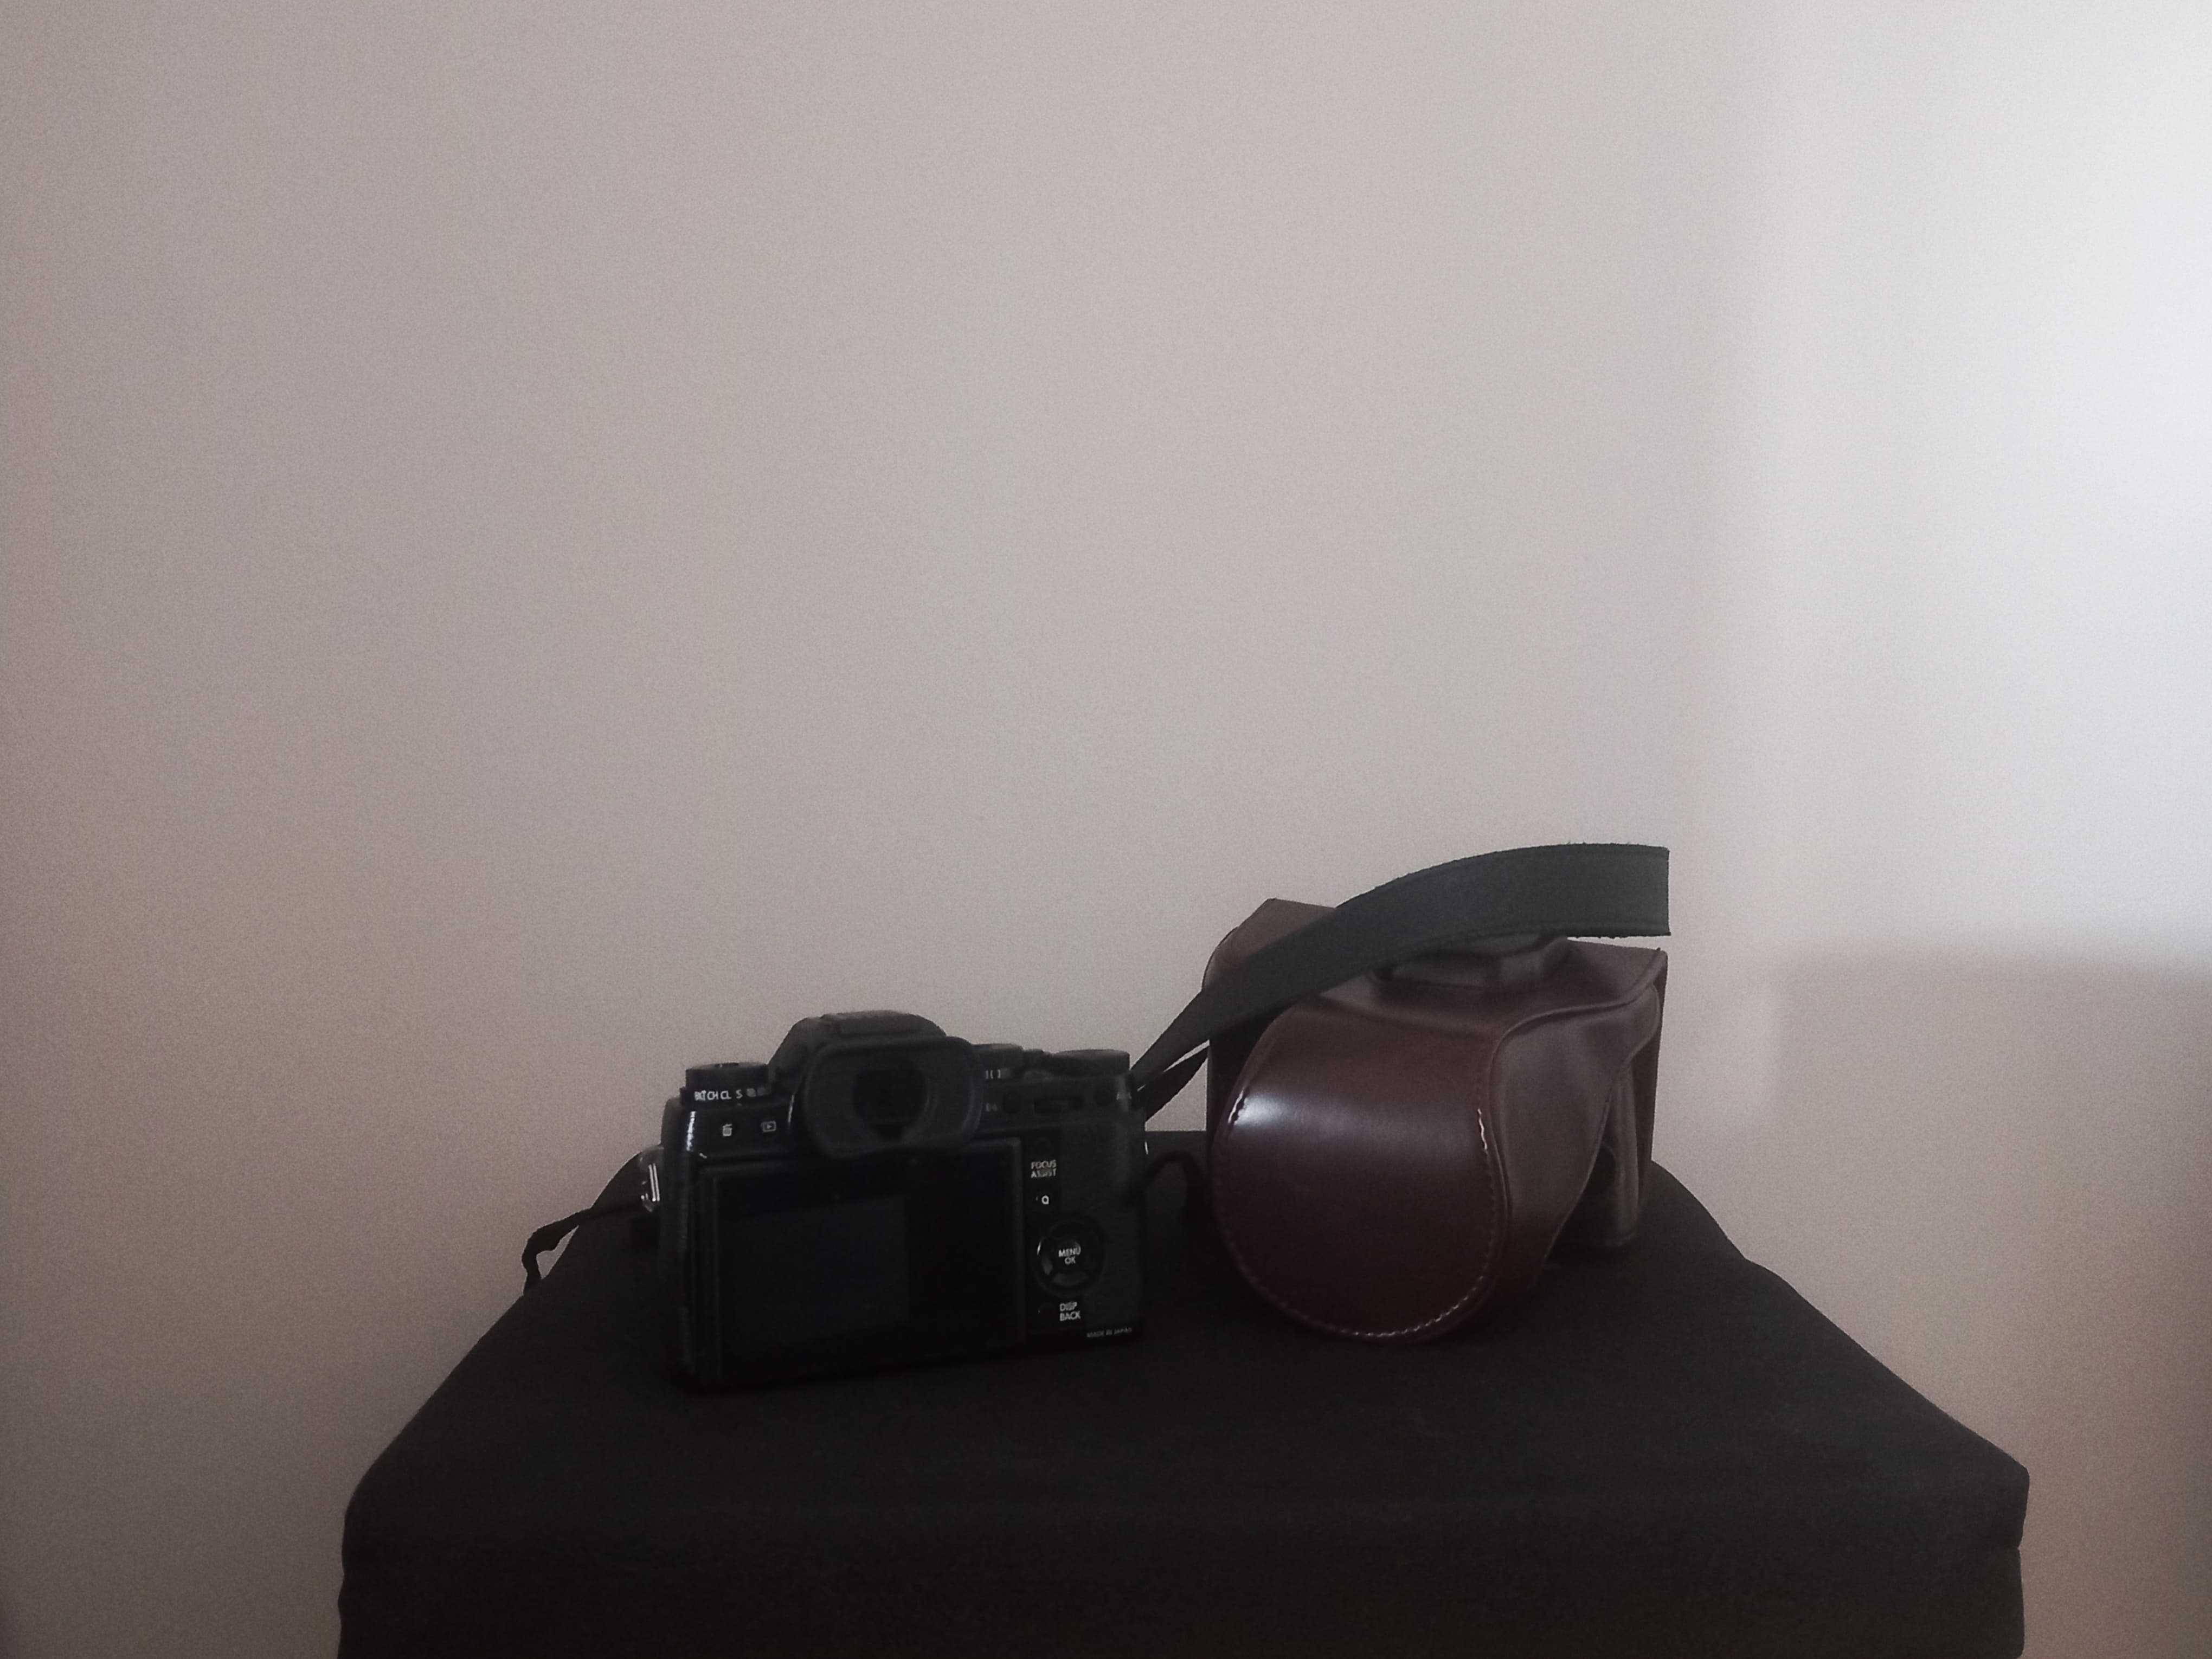 Camara Fotográfica Fuji X-T1 com capa, lente vivitar28mm e mais